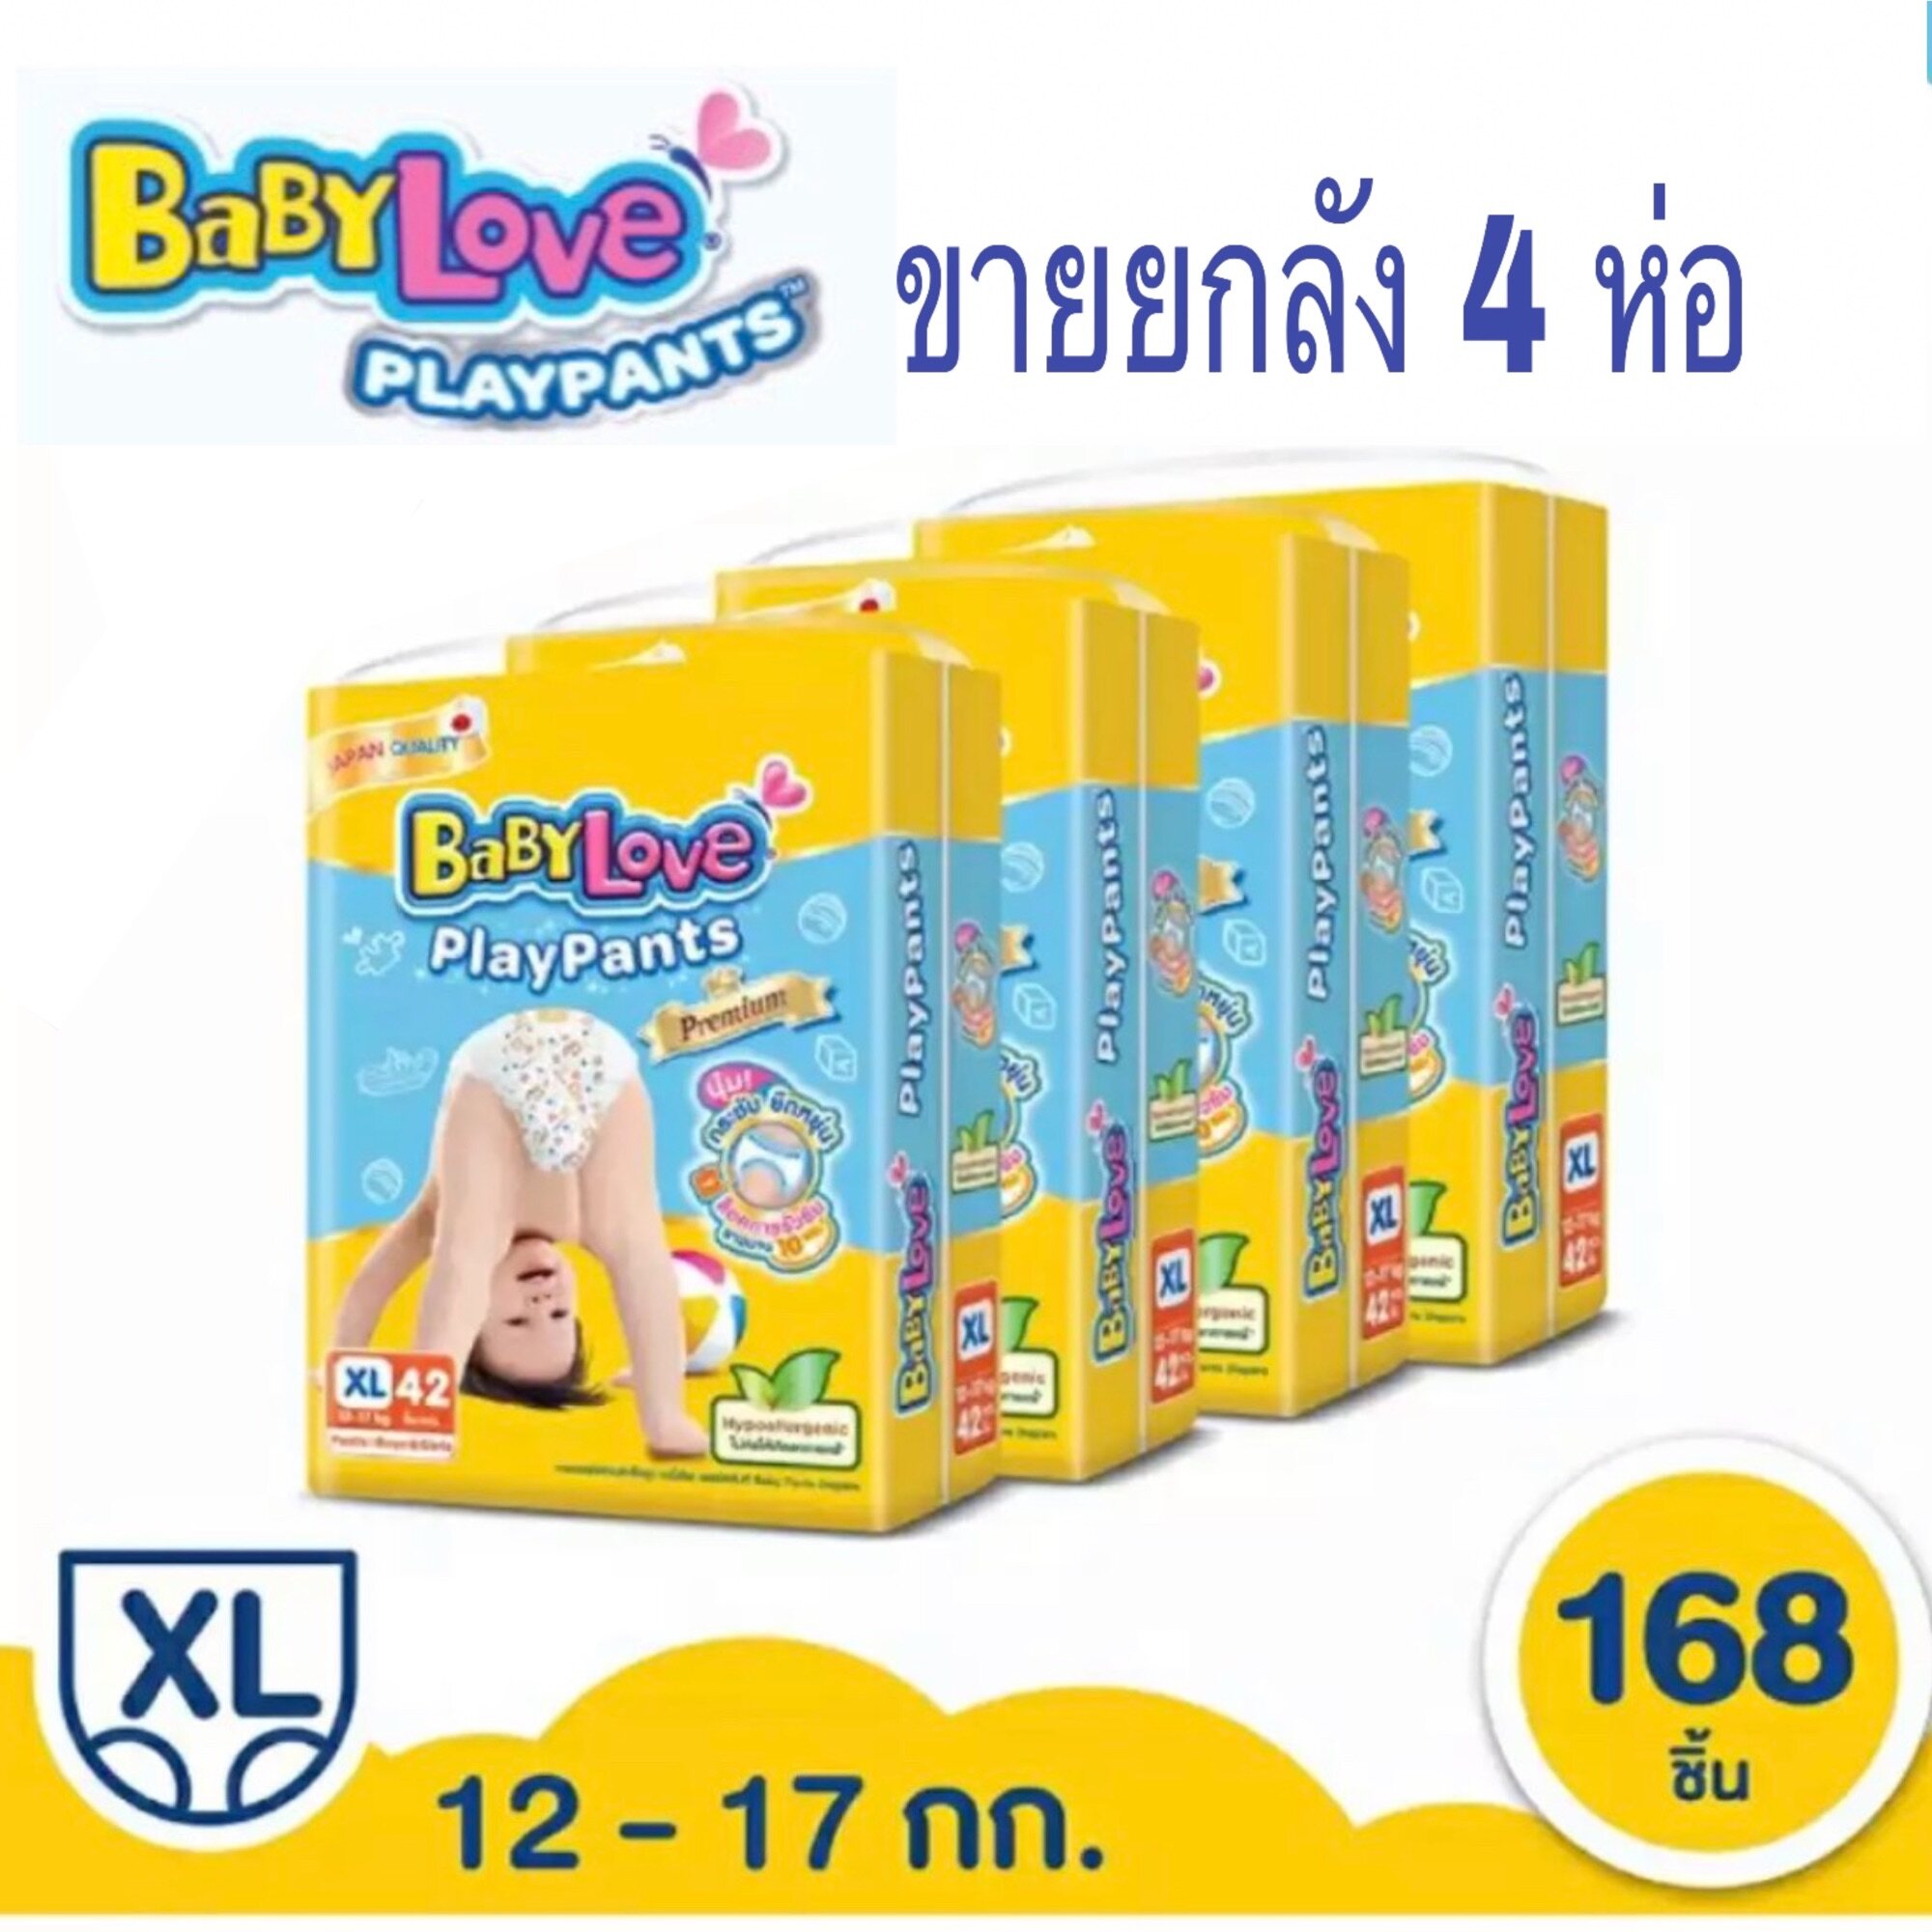 ราคา Babylove PlayPants Premium เบบี้เลิฟ เพลย์แพ้นส์ XL 42 ชิ้น **ขายยกลัง 4 ห่อ**